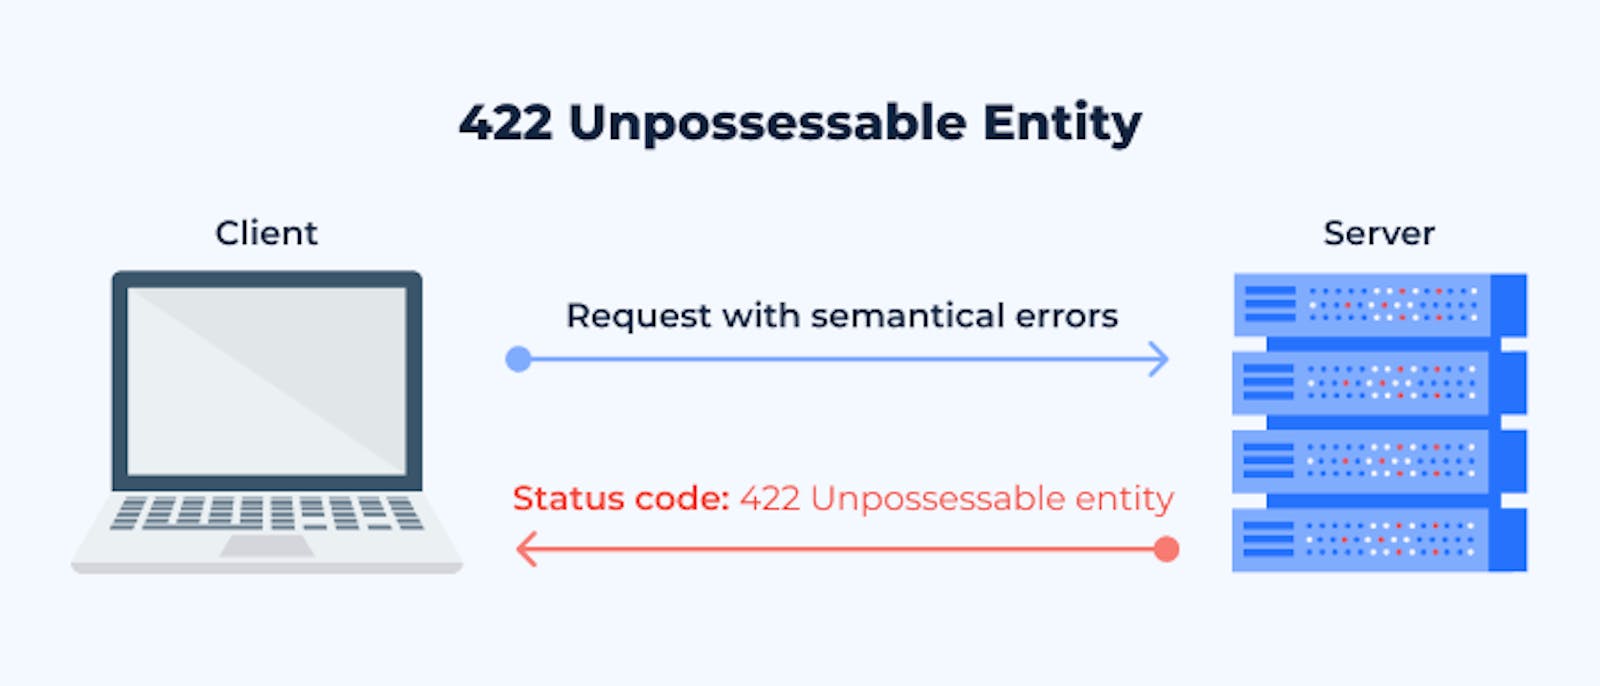 What is a 422 - Unprocessable Entity/Content?